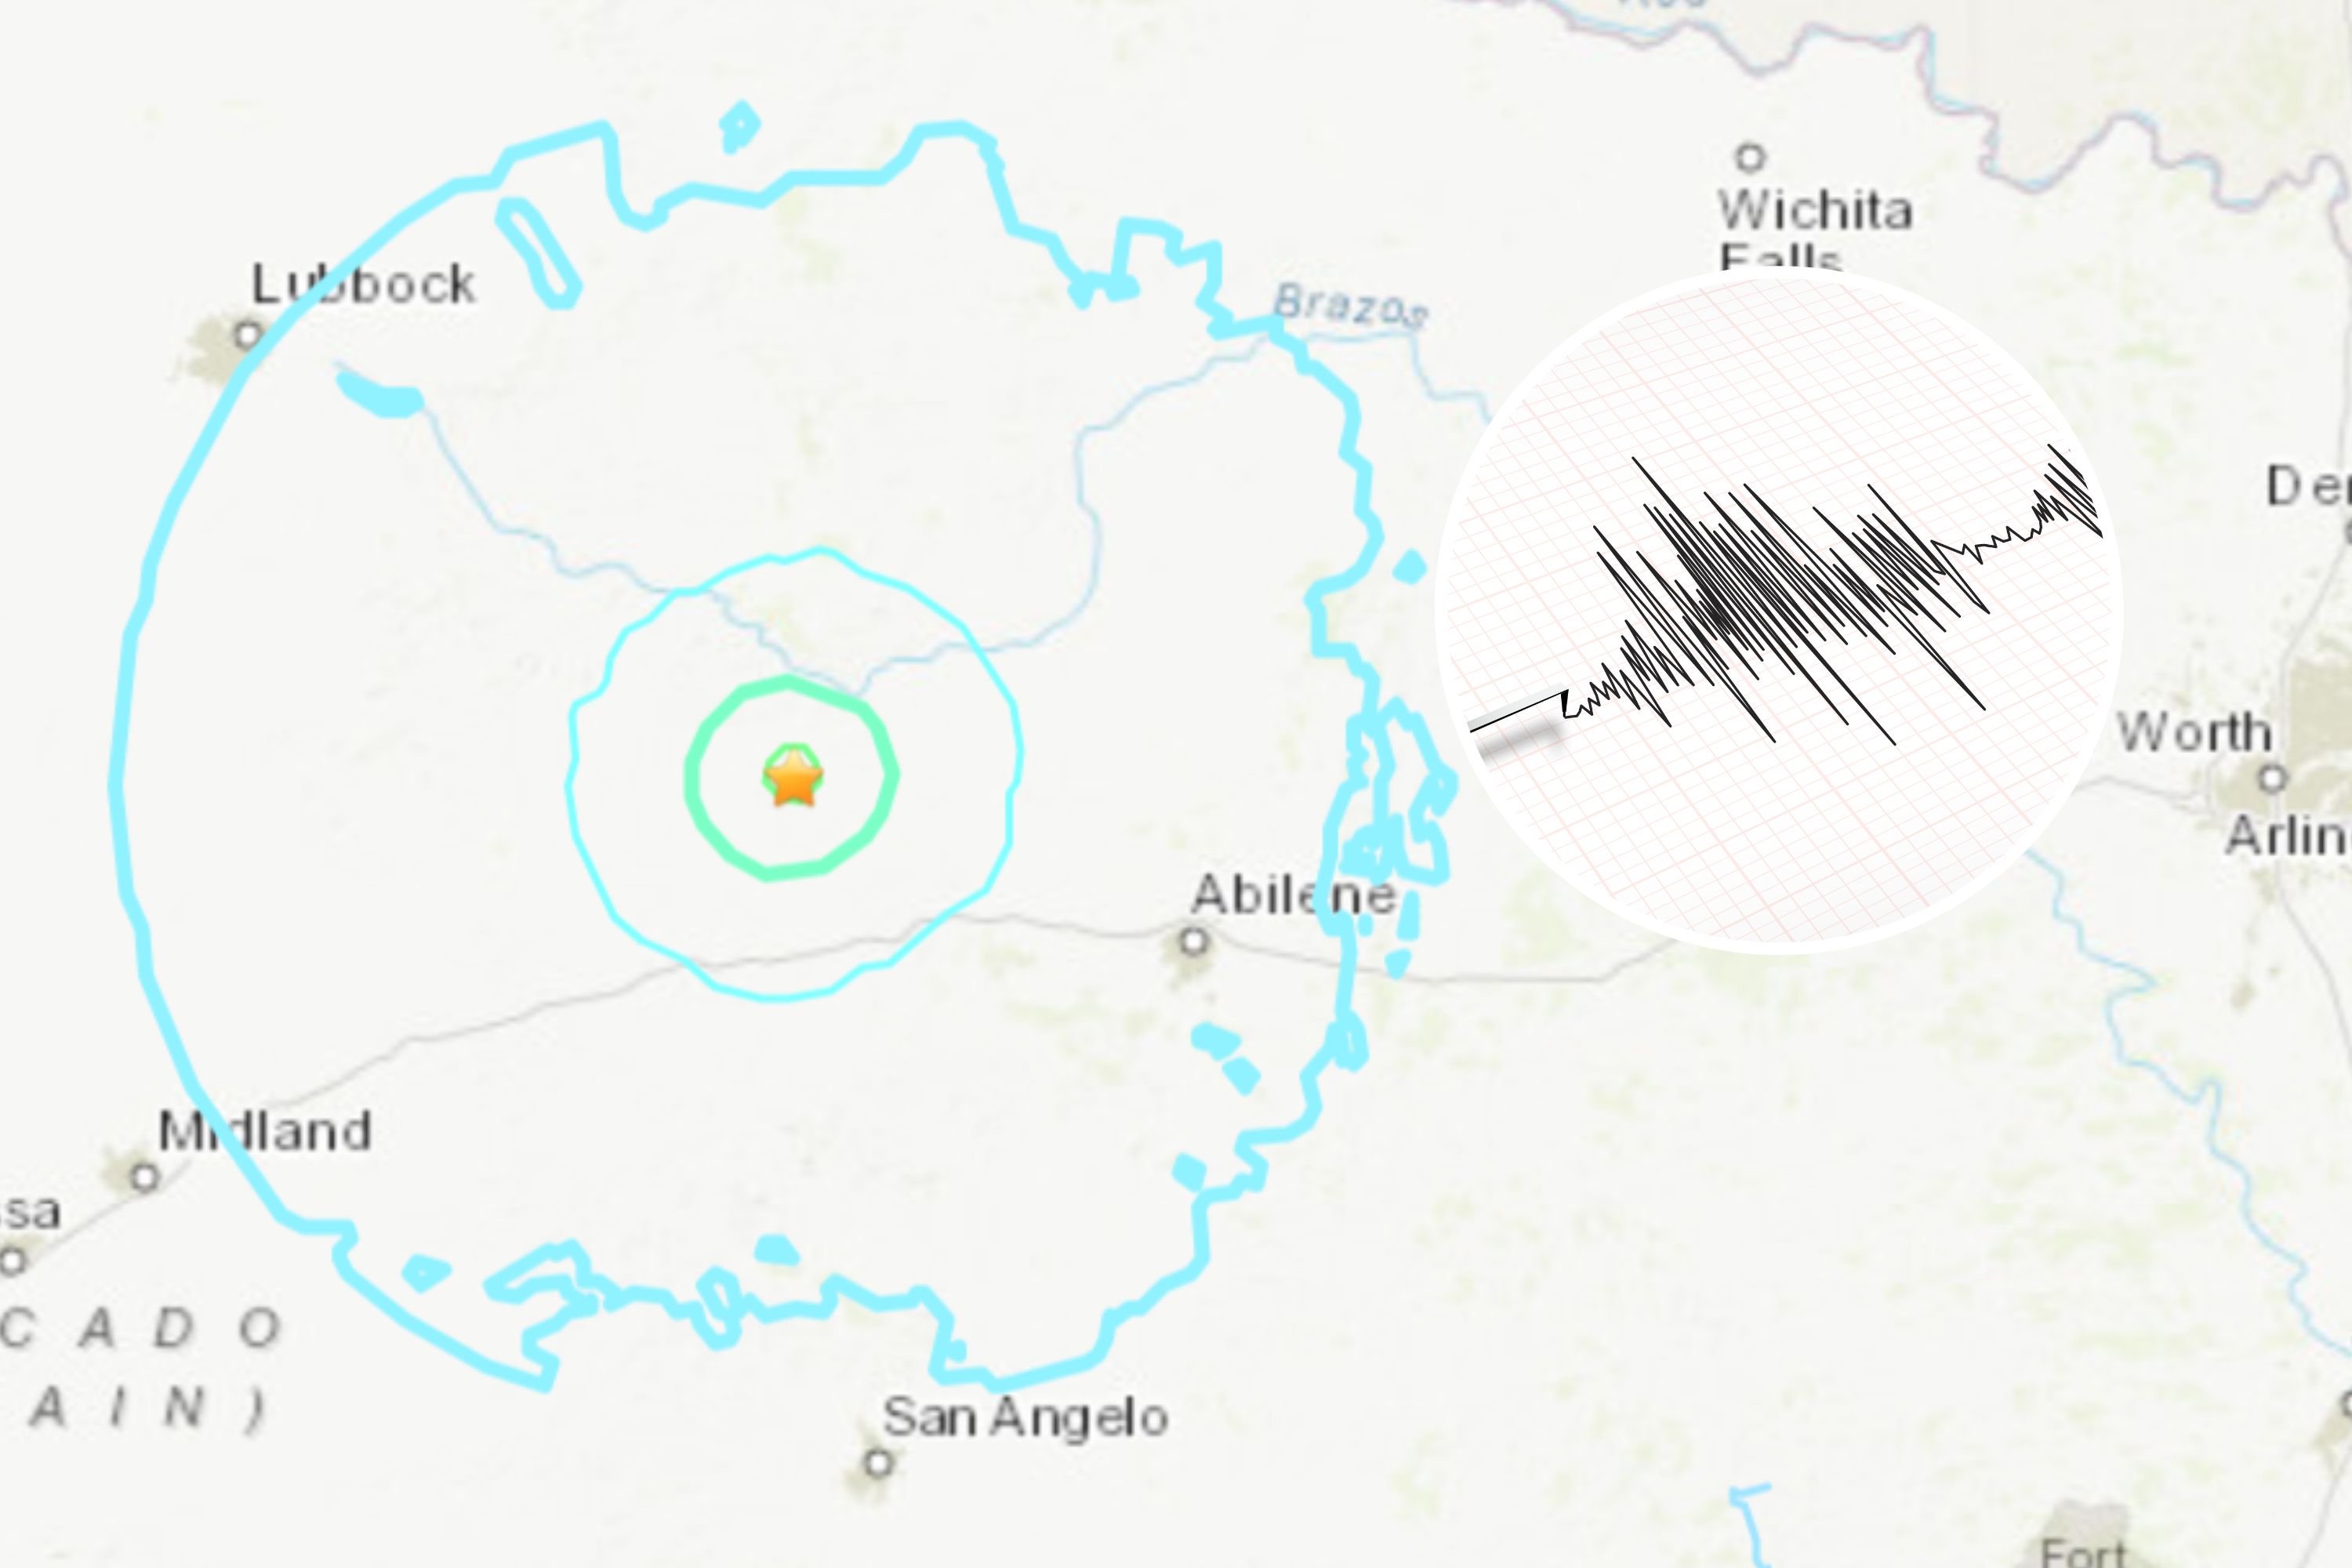 Texas earthquake: 4.9 tremor felt across Abilene